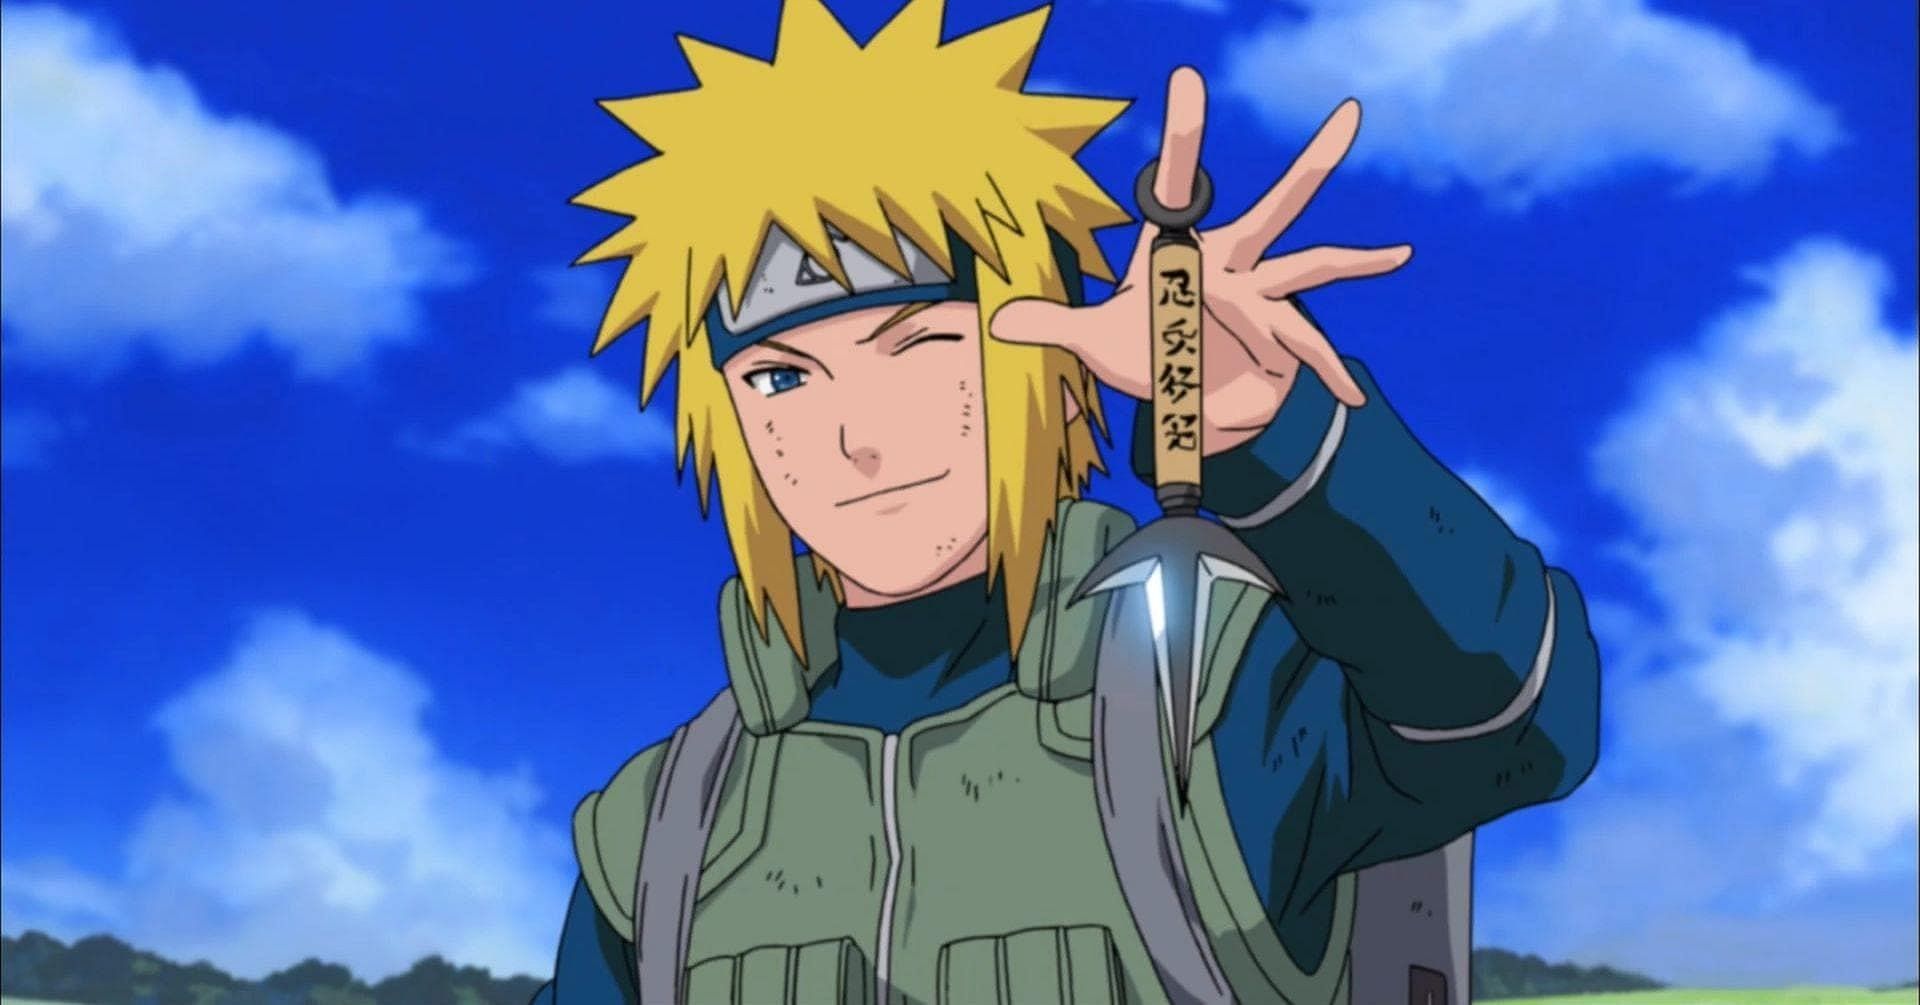 Minato Namikaze as shown in the anime (Image via Naruto)